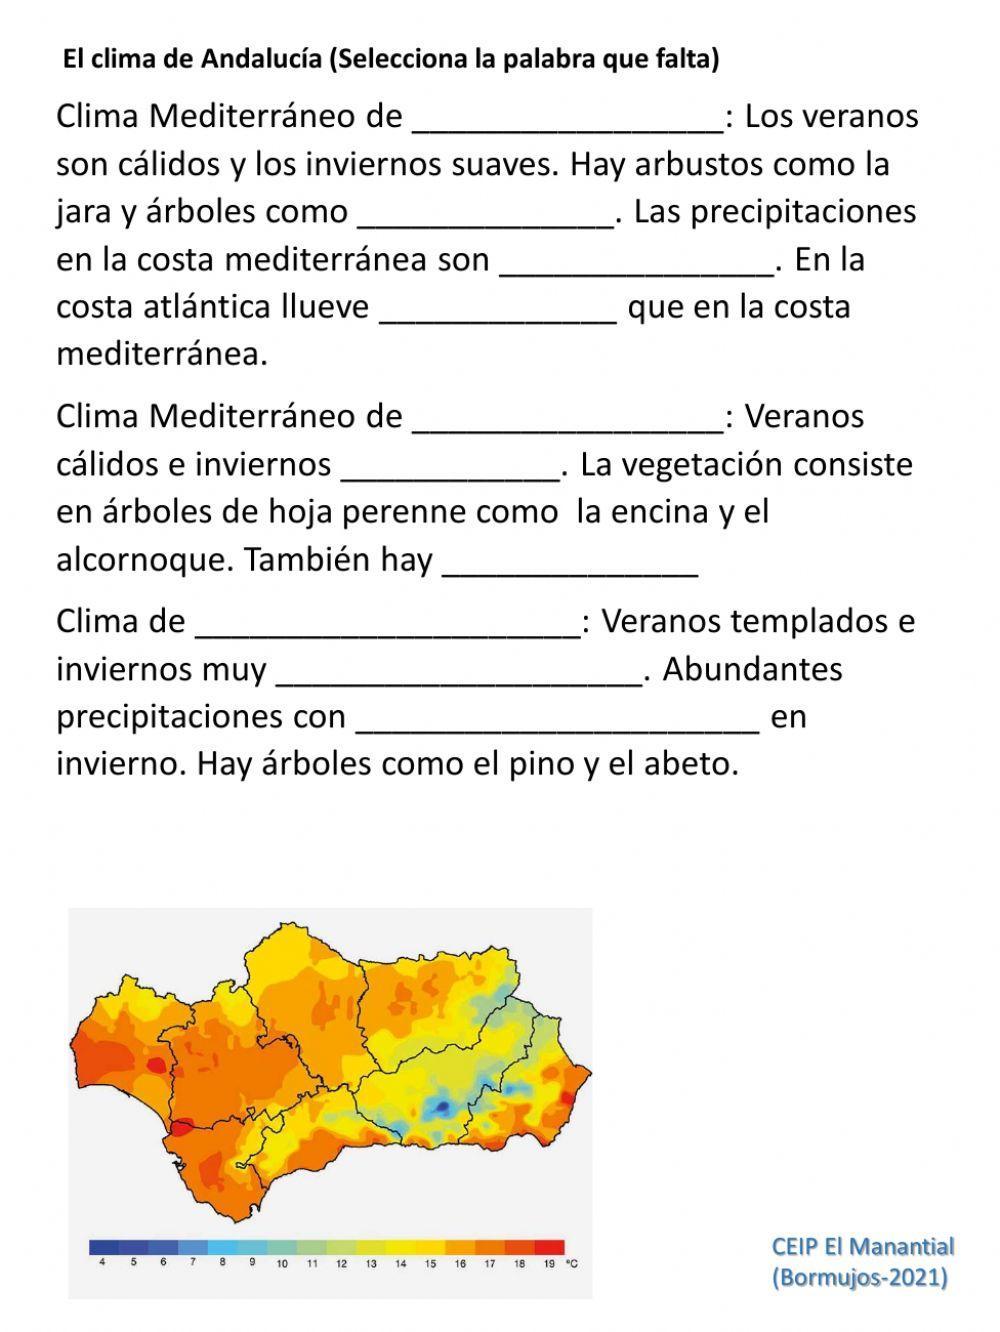 Climas de España y Andalucía